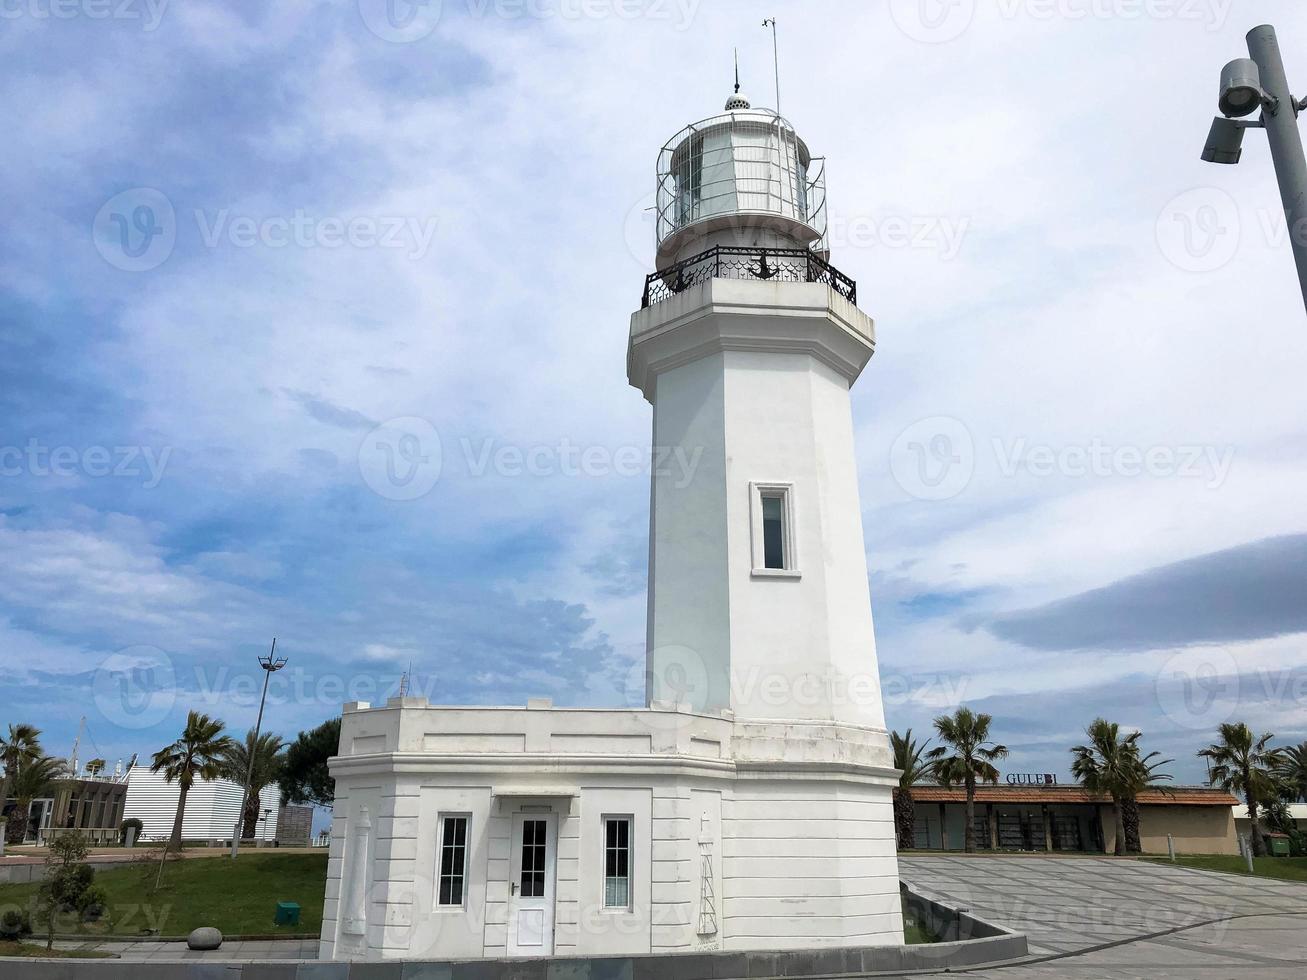 grand phare blanc en pierre de taille sur la station balnéaire chaude de la mer tropicale avec des palmiers contre le ciel bleu photo